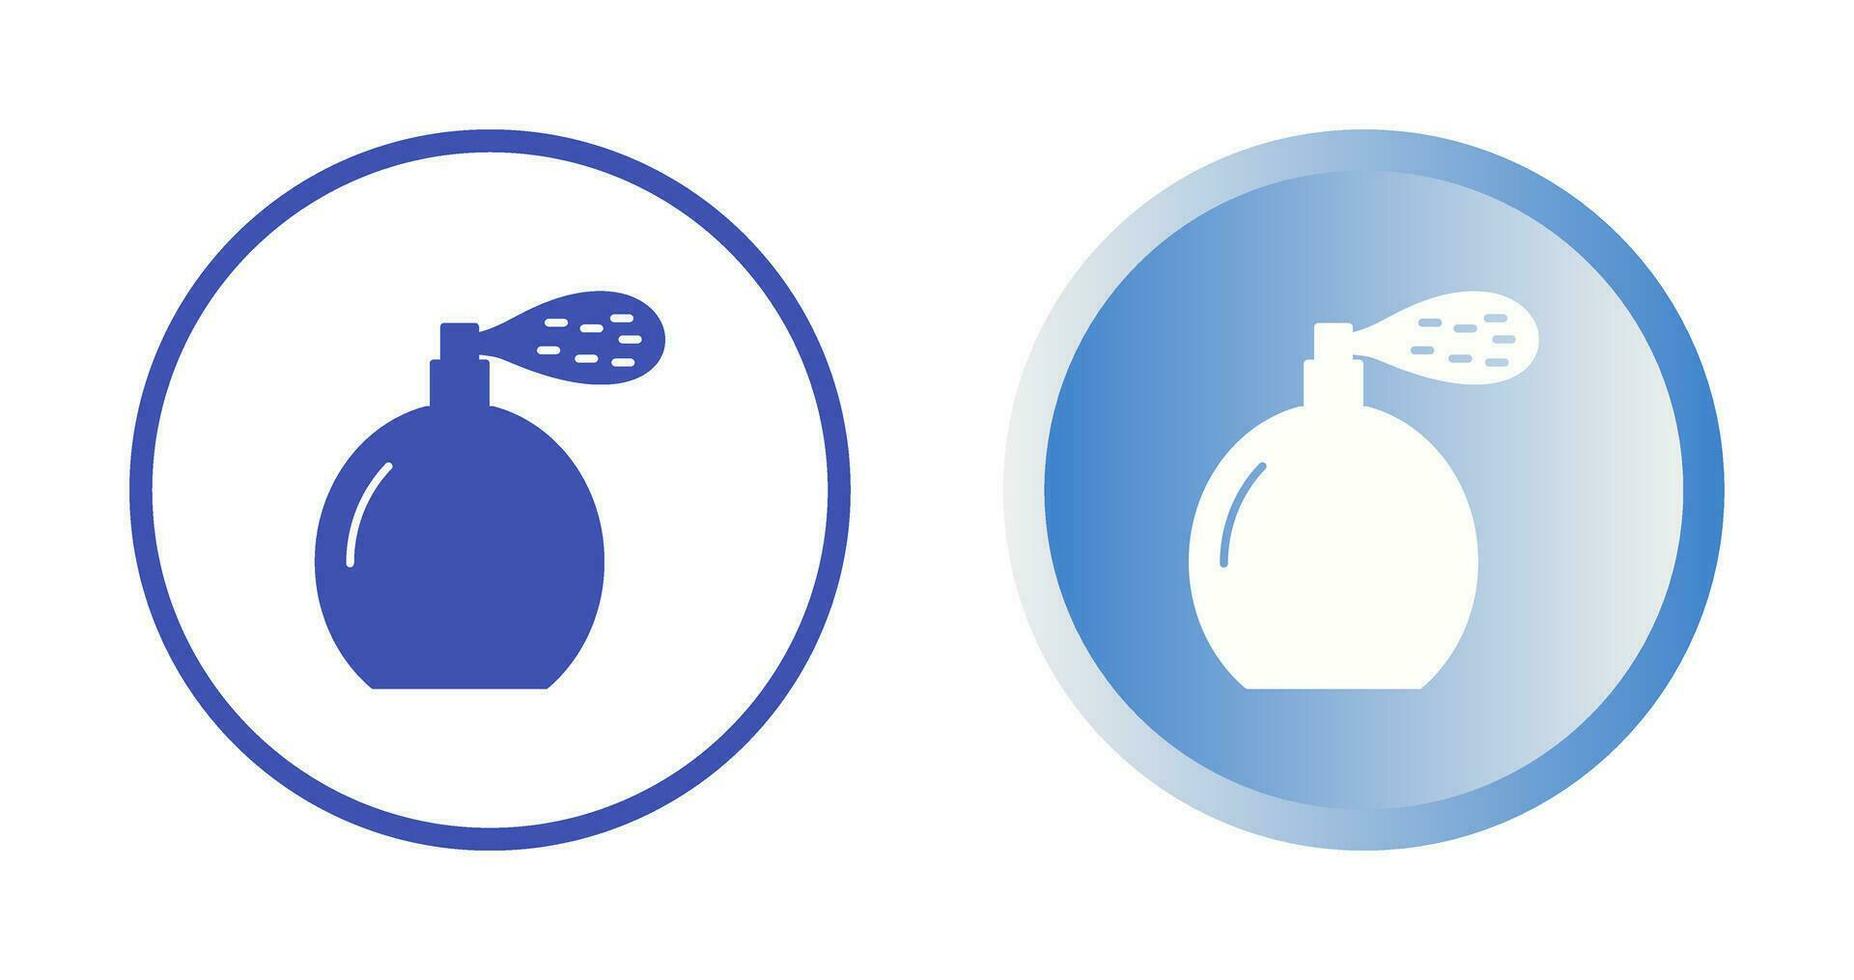 ícone de vetor de frasco de perfume